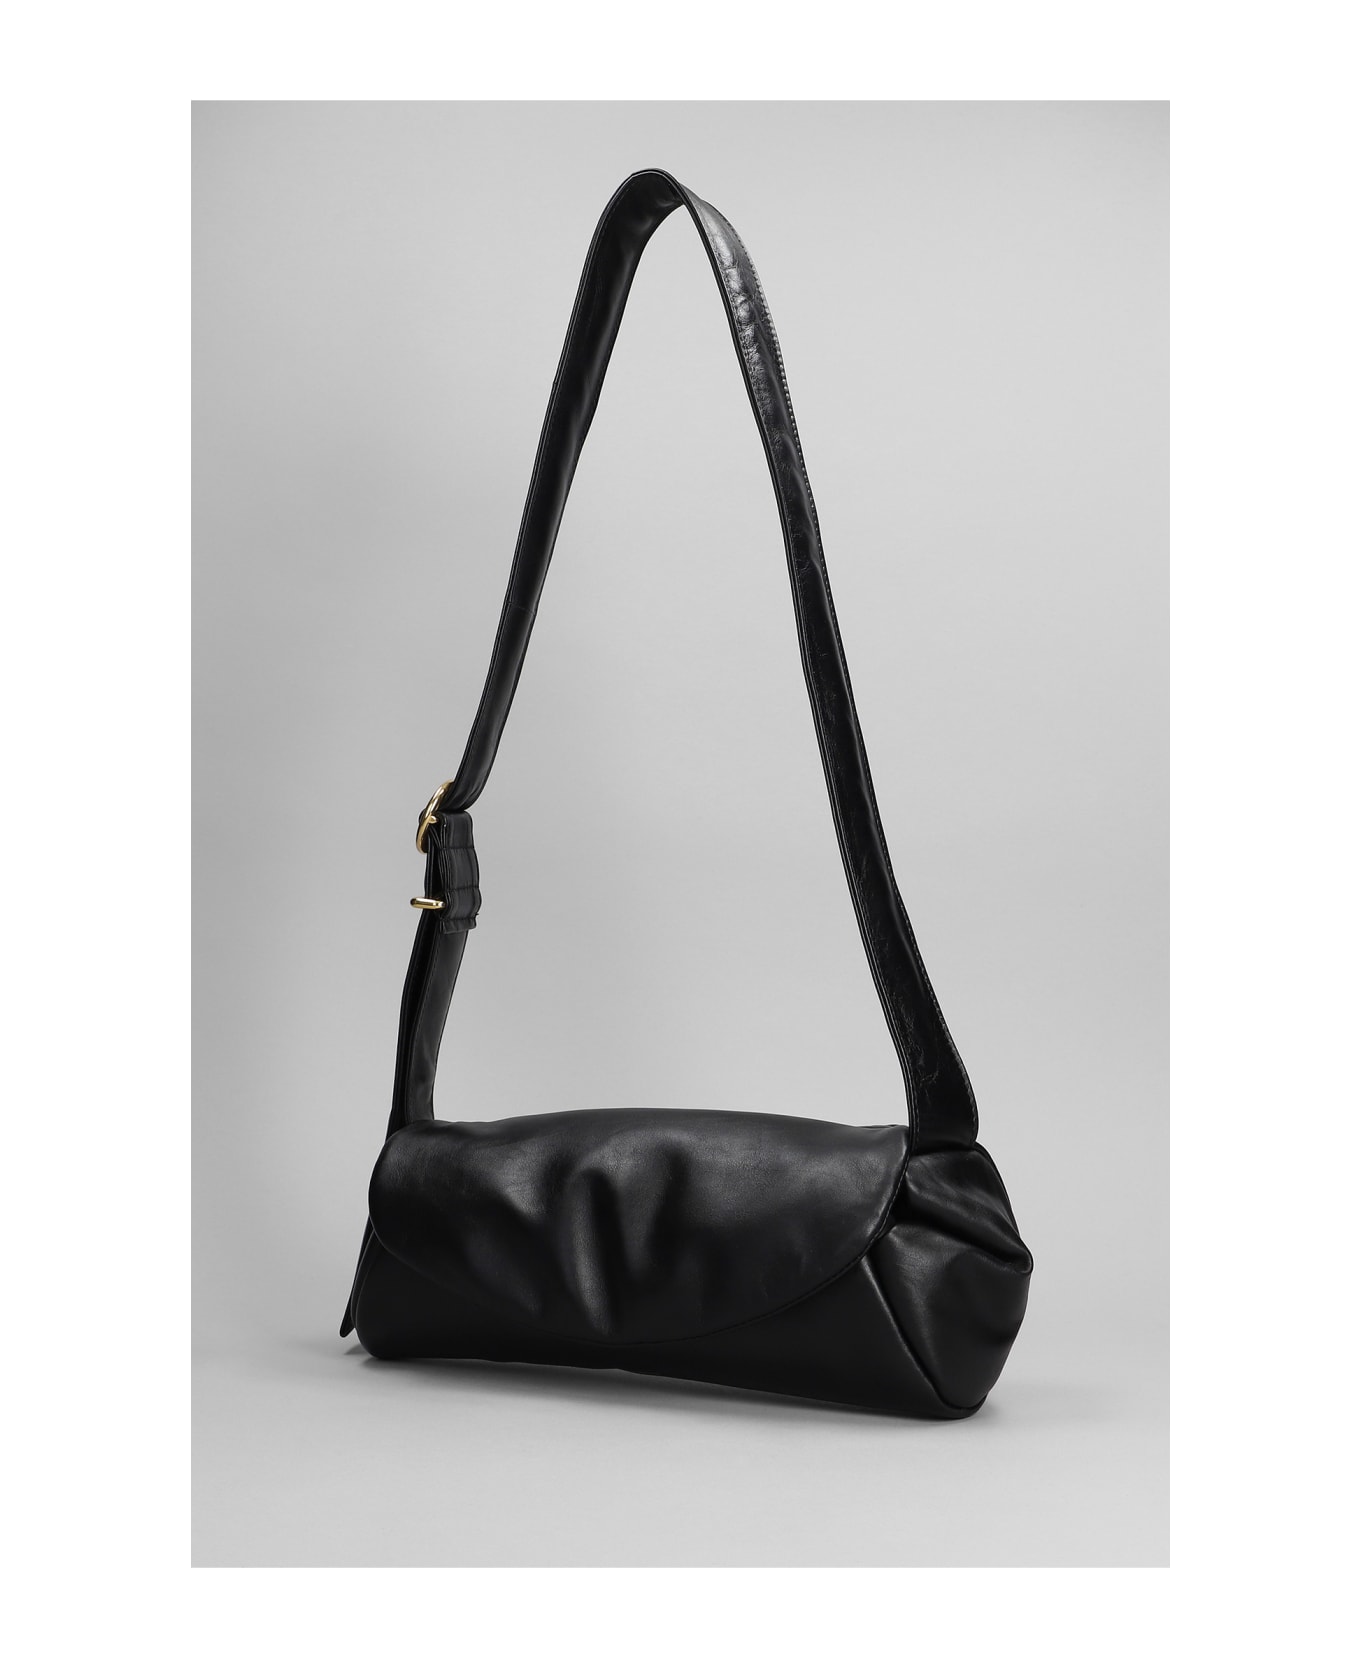 Jil Sander Cannolo Piccolo Shoulder Bag In Black Leather - Black